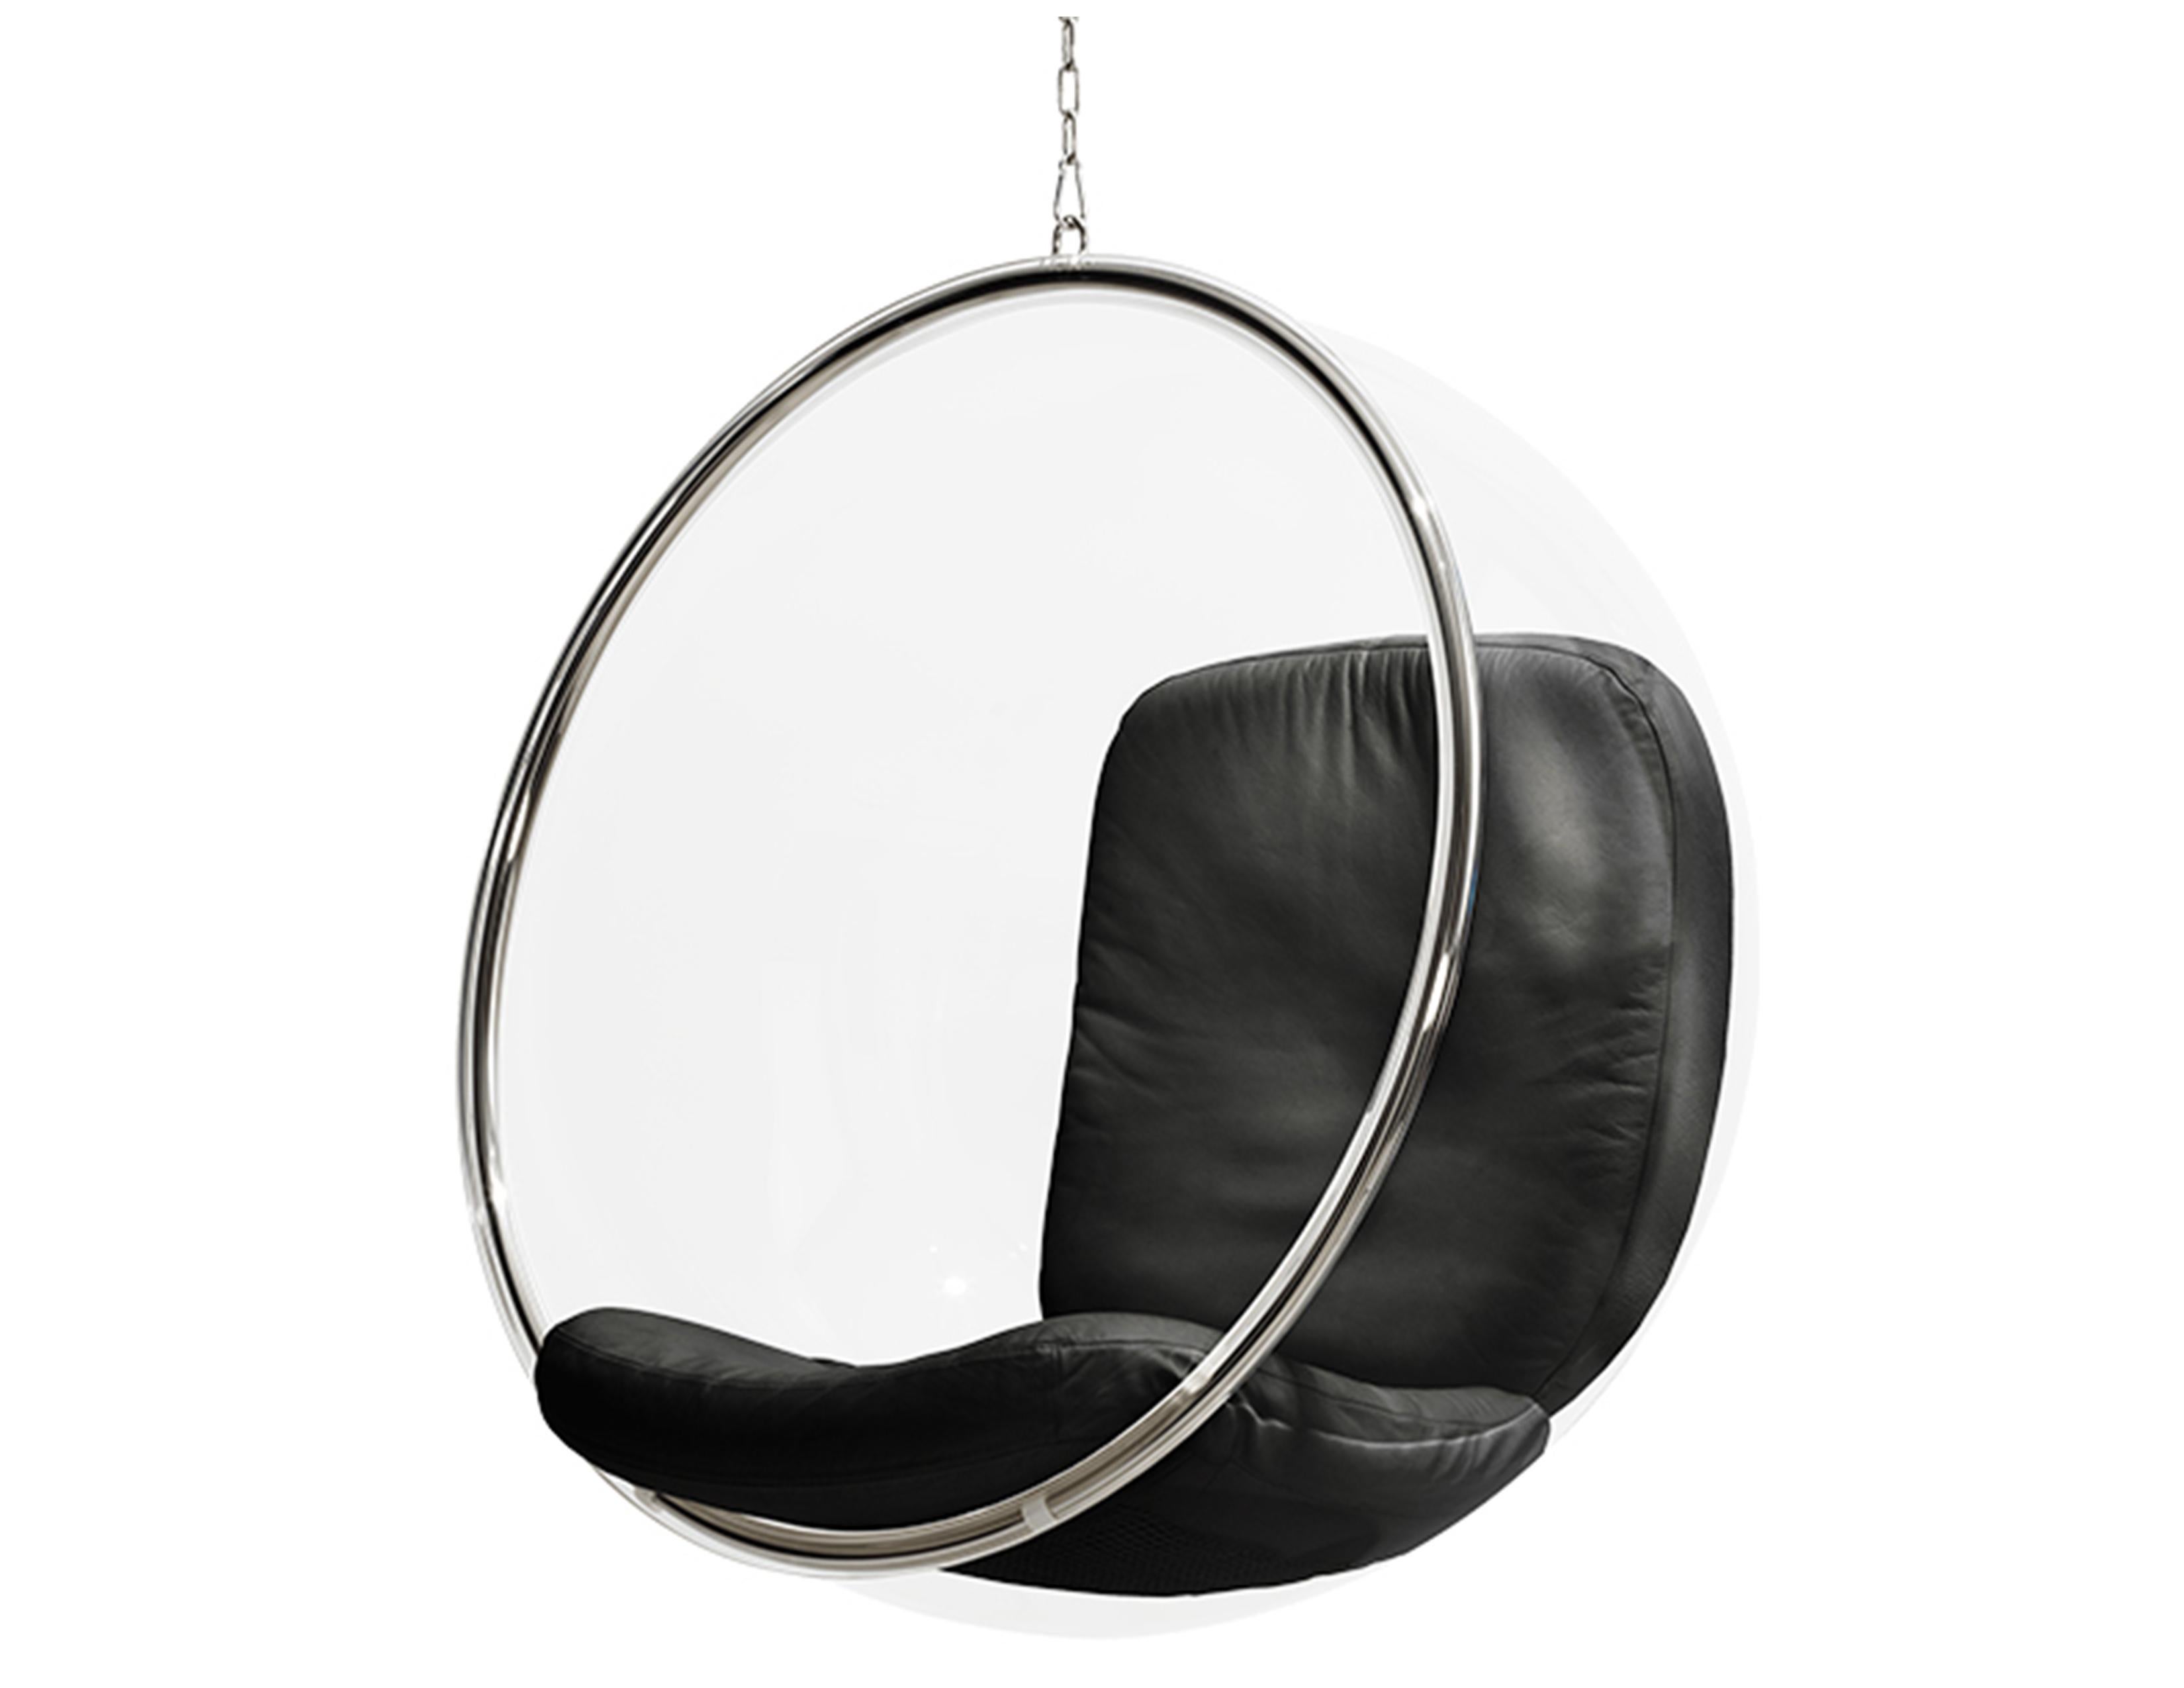 La chaise bulle a été conçue par Eero Aarnio en 1968. D'après les notes d'Eero, la bulle est suspendue au plafond parce qu'il n'y a pas de bonne façon de faire un piédestal clair Il partage la même acoustique unique que le fauteuil à boule, un petit